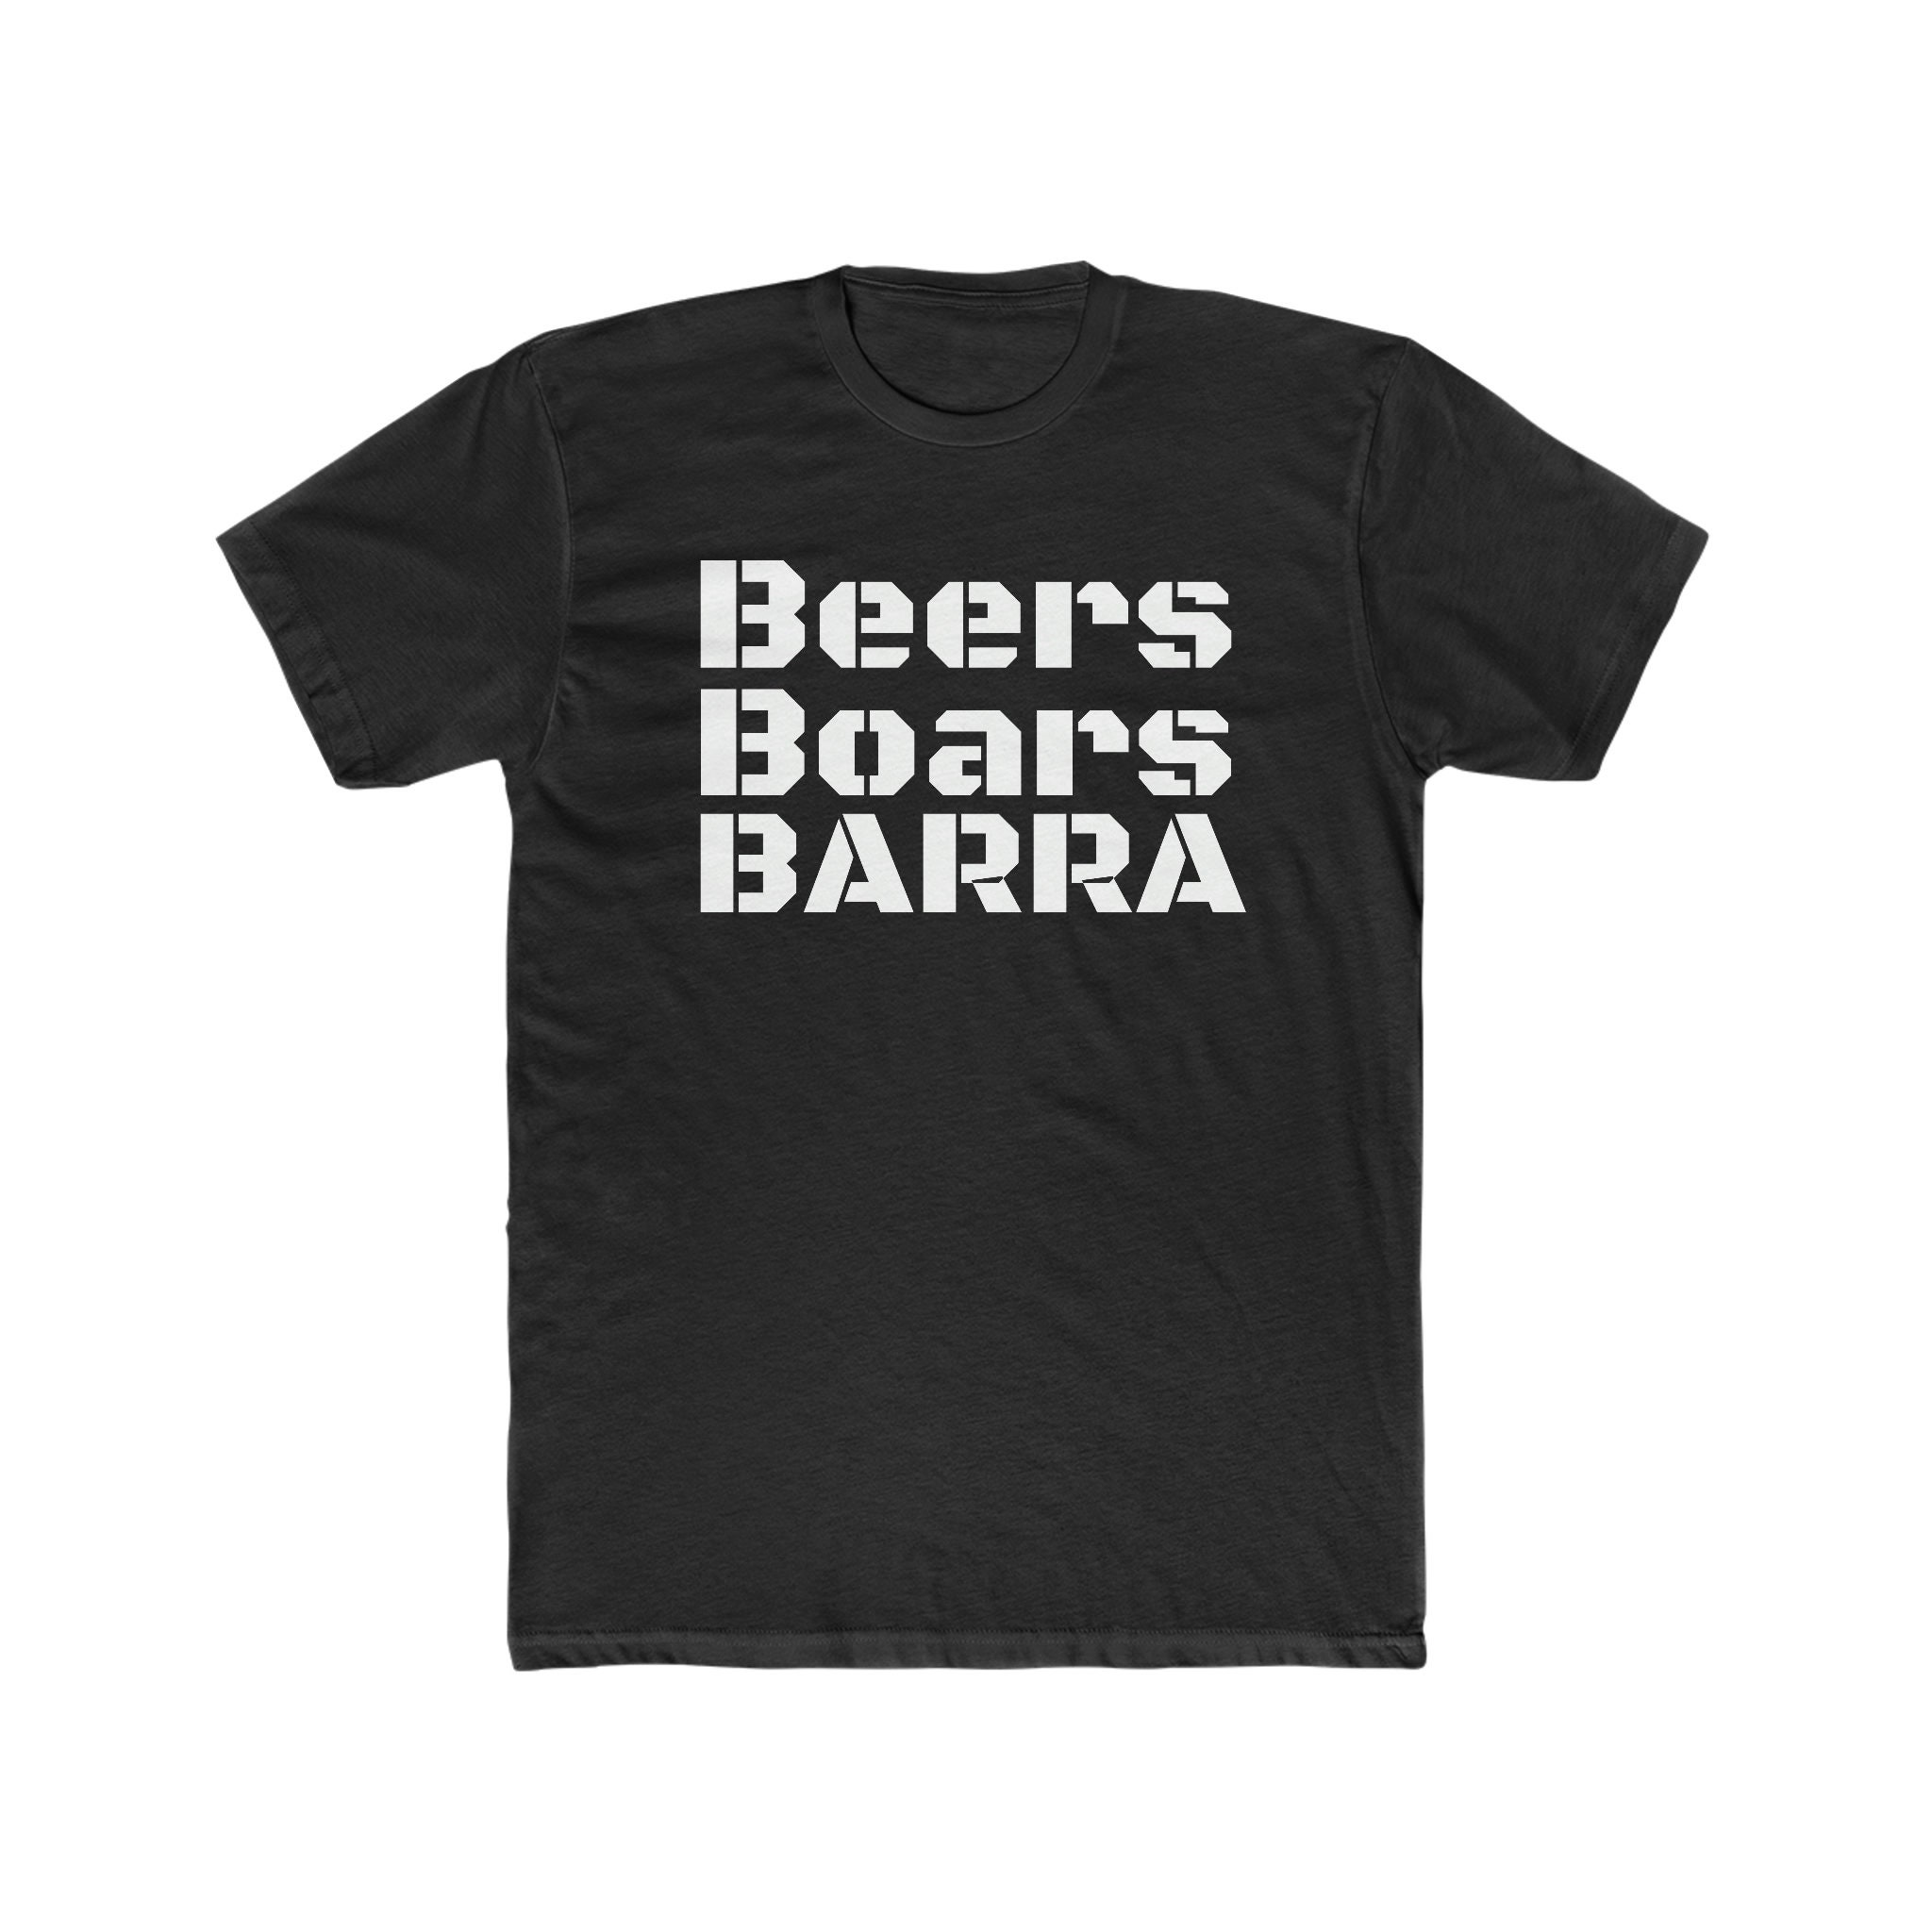 Beers Boars Barra Fishing Tee Novelty Beer Hunting Shirt